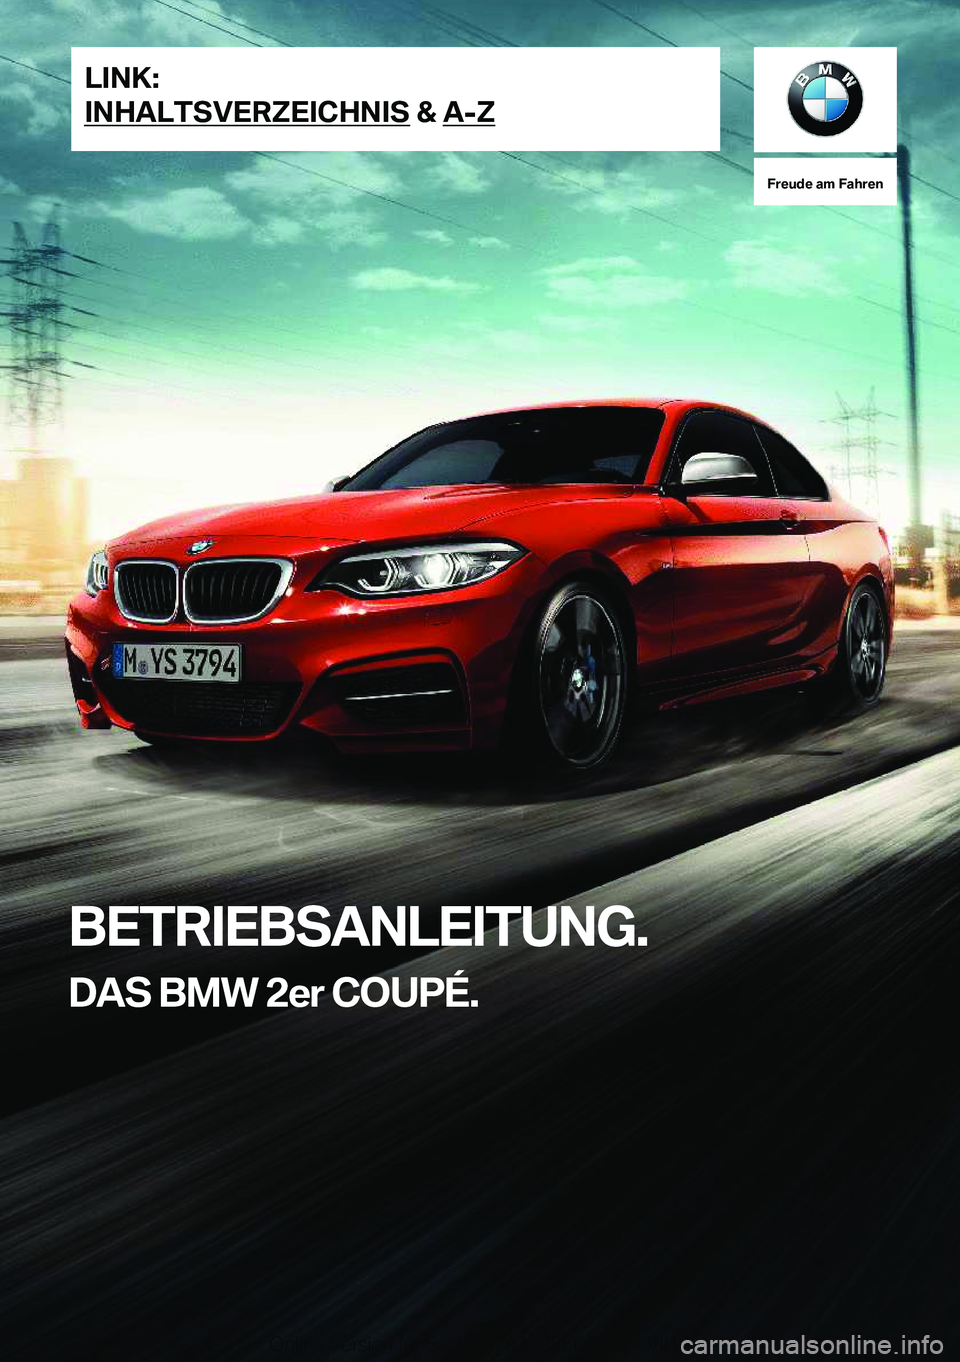 BMW 2 SERIES COUPE 2020  Betriebsanleitungen (in German) �F�r�e�u�d�e��a�m��F�a�h�r�e�n
�B�E�T�R�I�E�B�S�A�N�L�E�I�T�U�N�G�.�D�A�S��B�M�W��2�e�r��C�O�U�P�